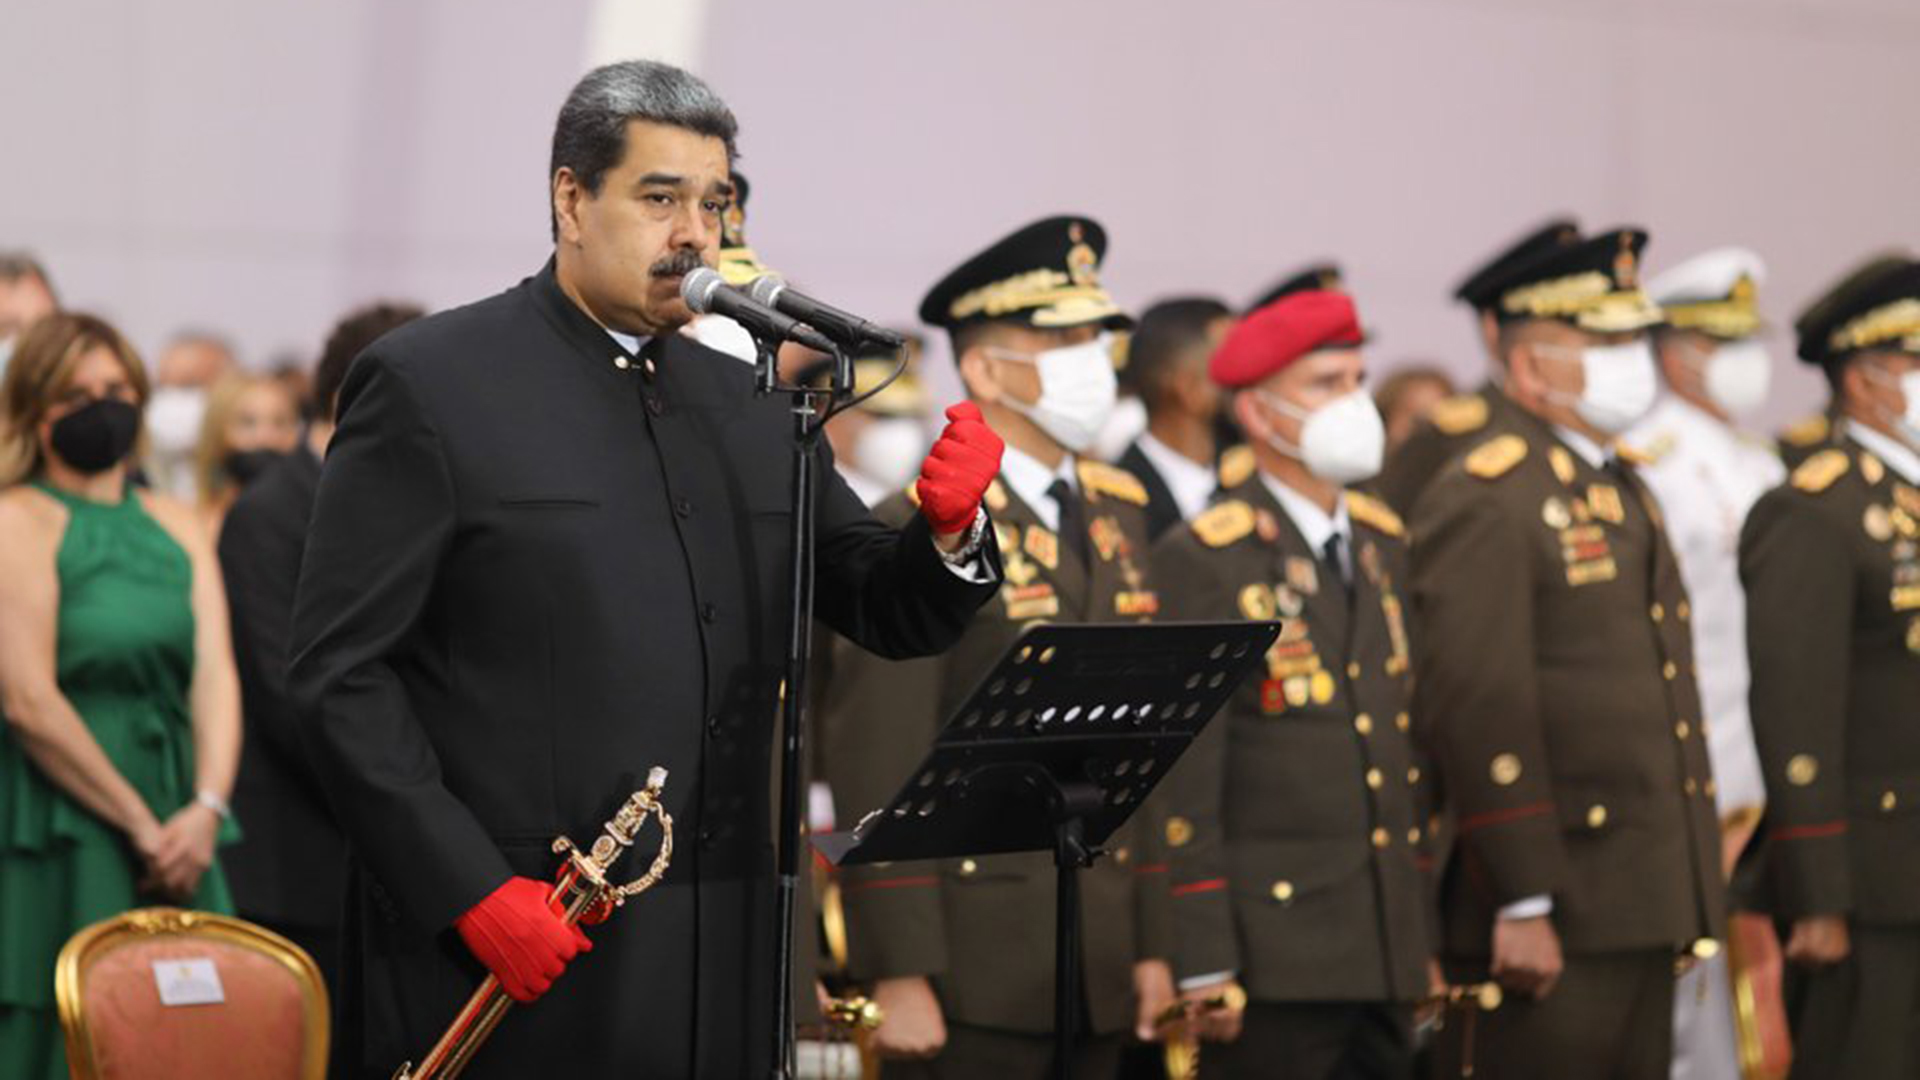 Quiénes son los nuevos generales de División del Ejército venezolano y por qué Maduro privilegia a los oficiales de la Guardia de Honor y de la Dirección de Inteligencia